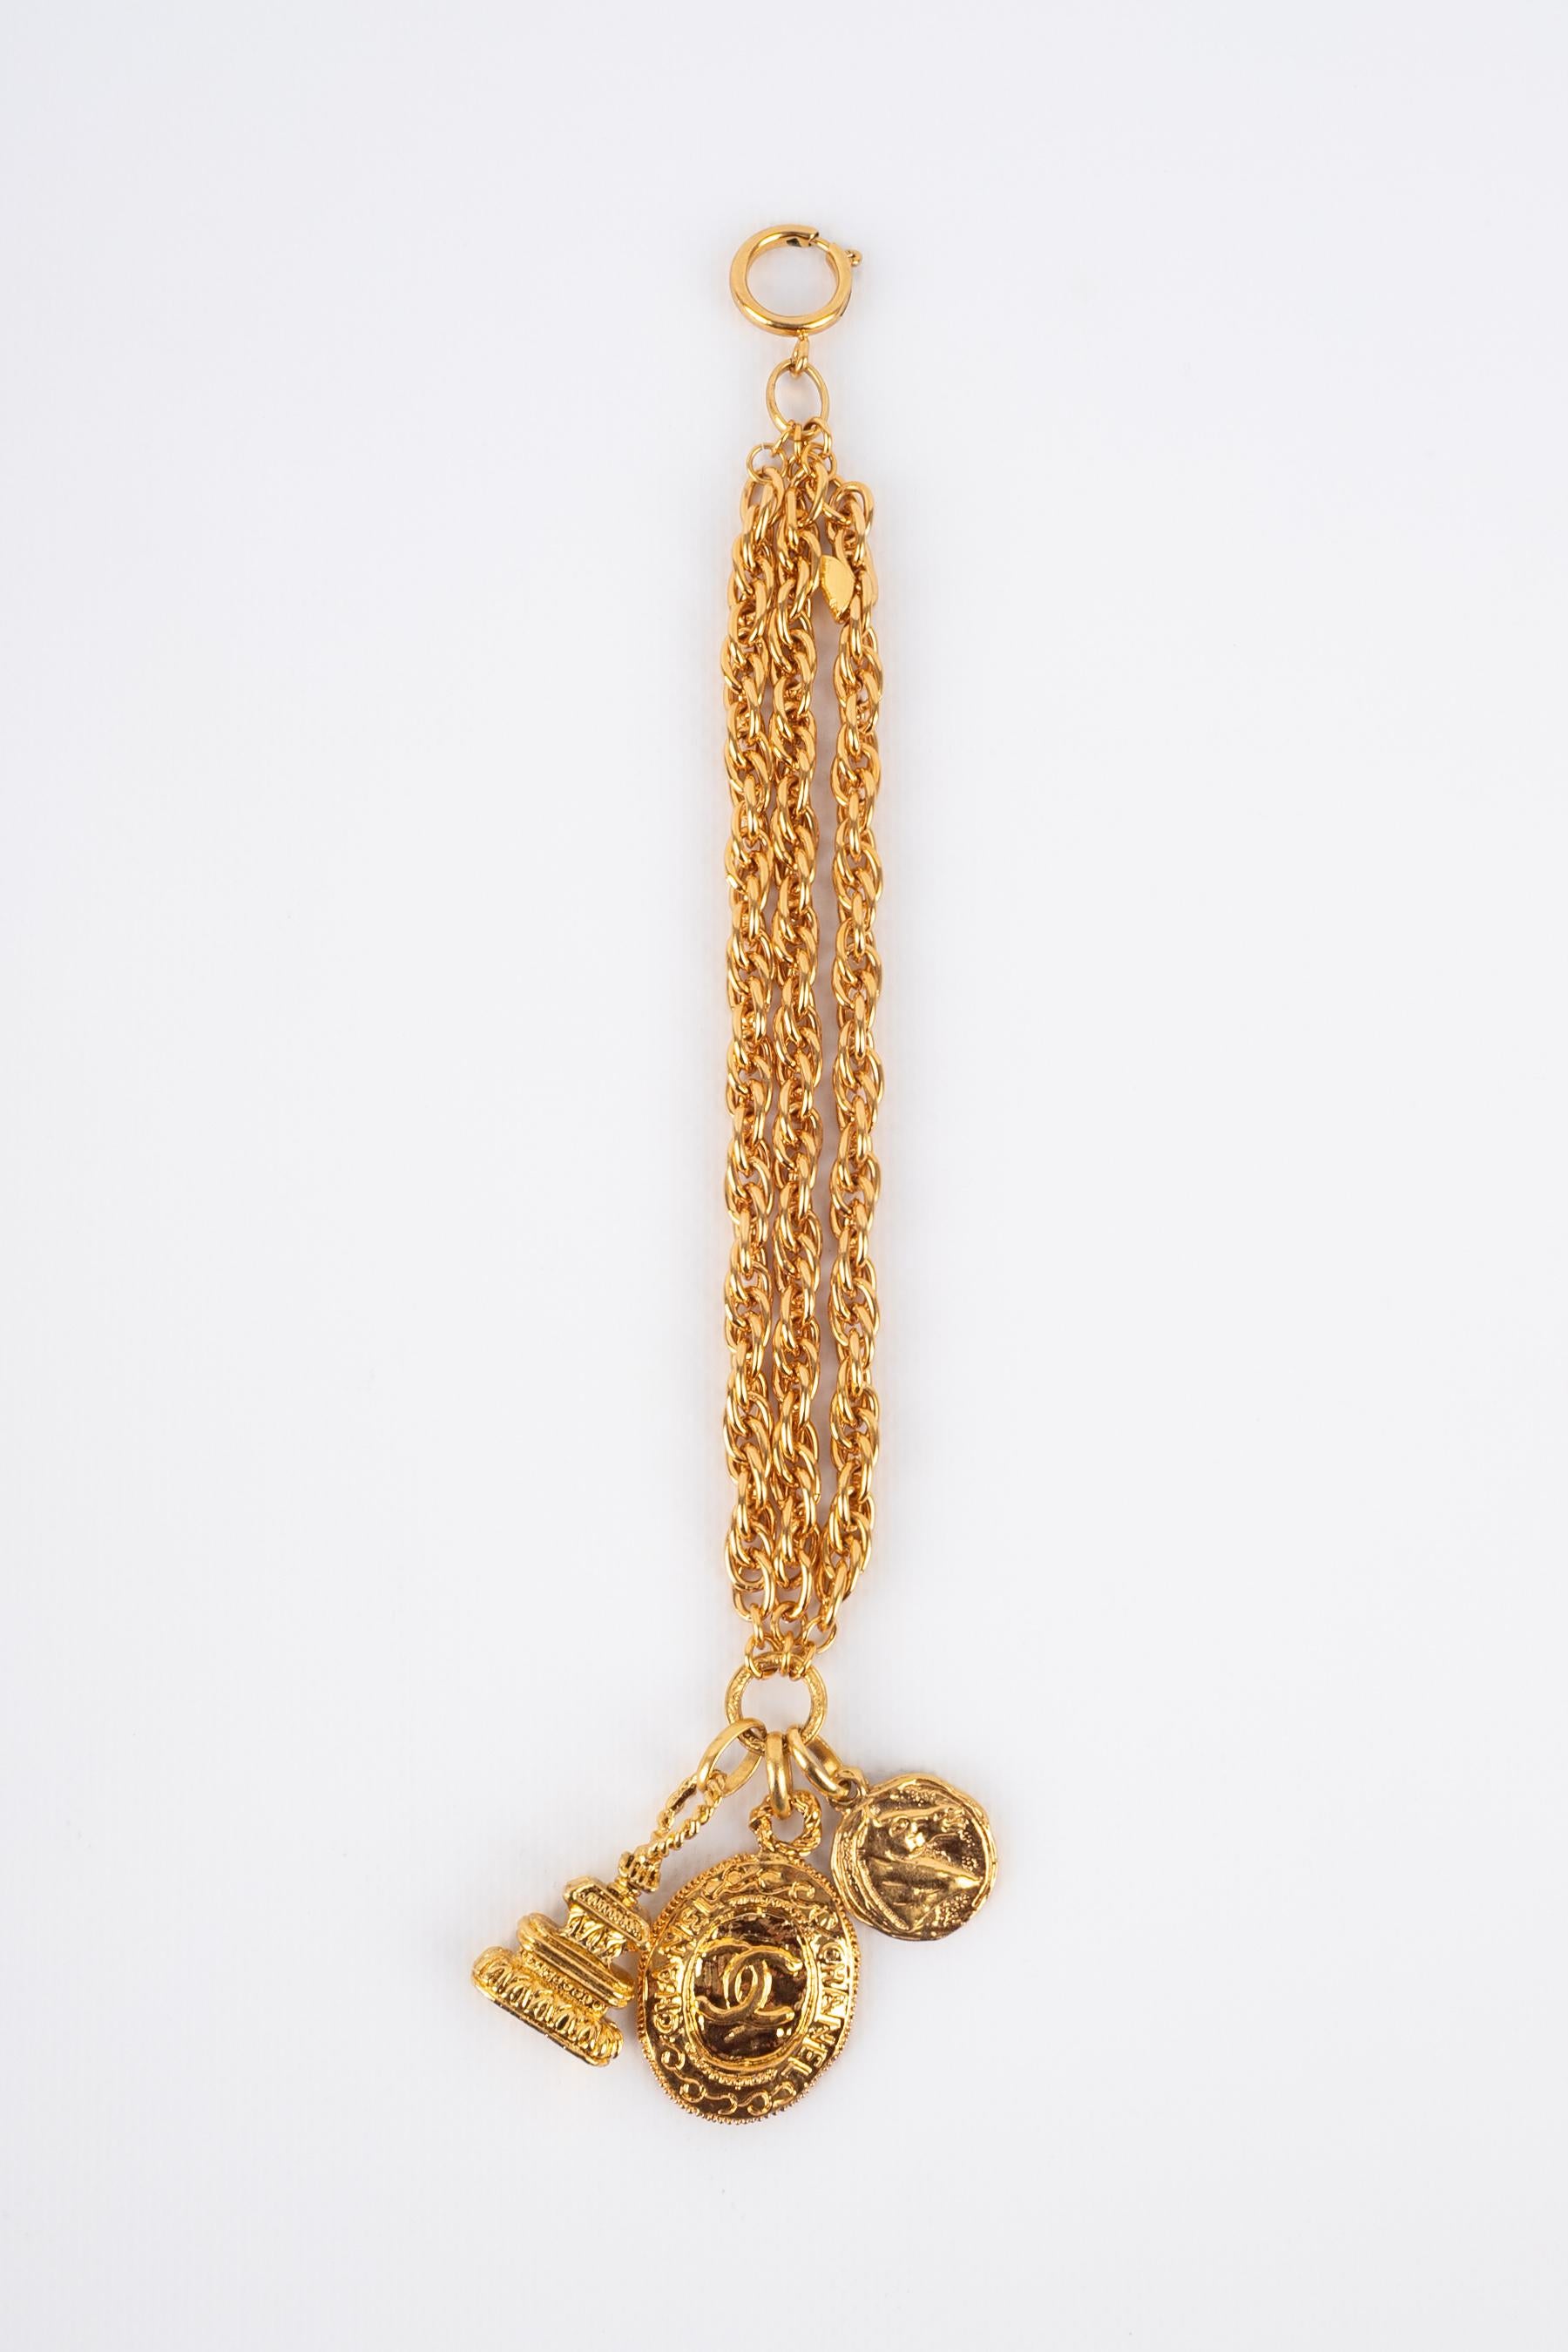 CHANEL - (Fabriqué en France) Bracelet sceau en métal doré.

Condit :
Très bon état.

Dimensions :
Longueur : 19 cm

BRAB19